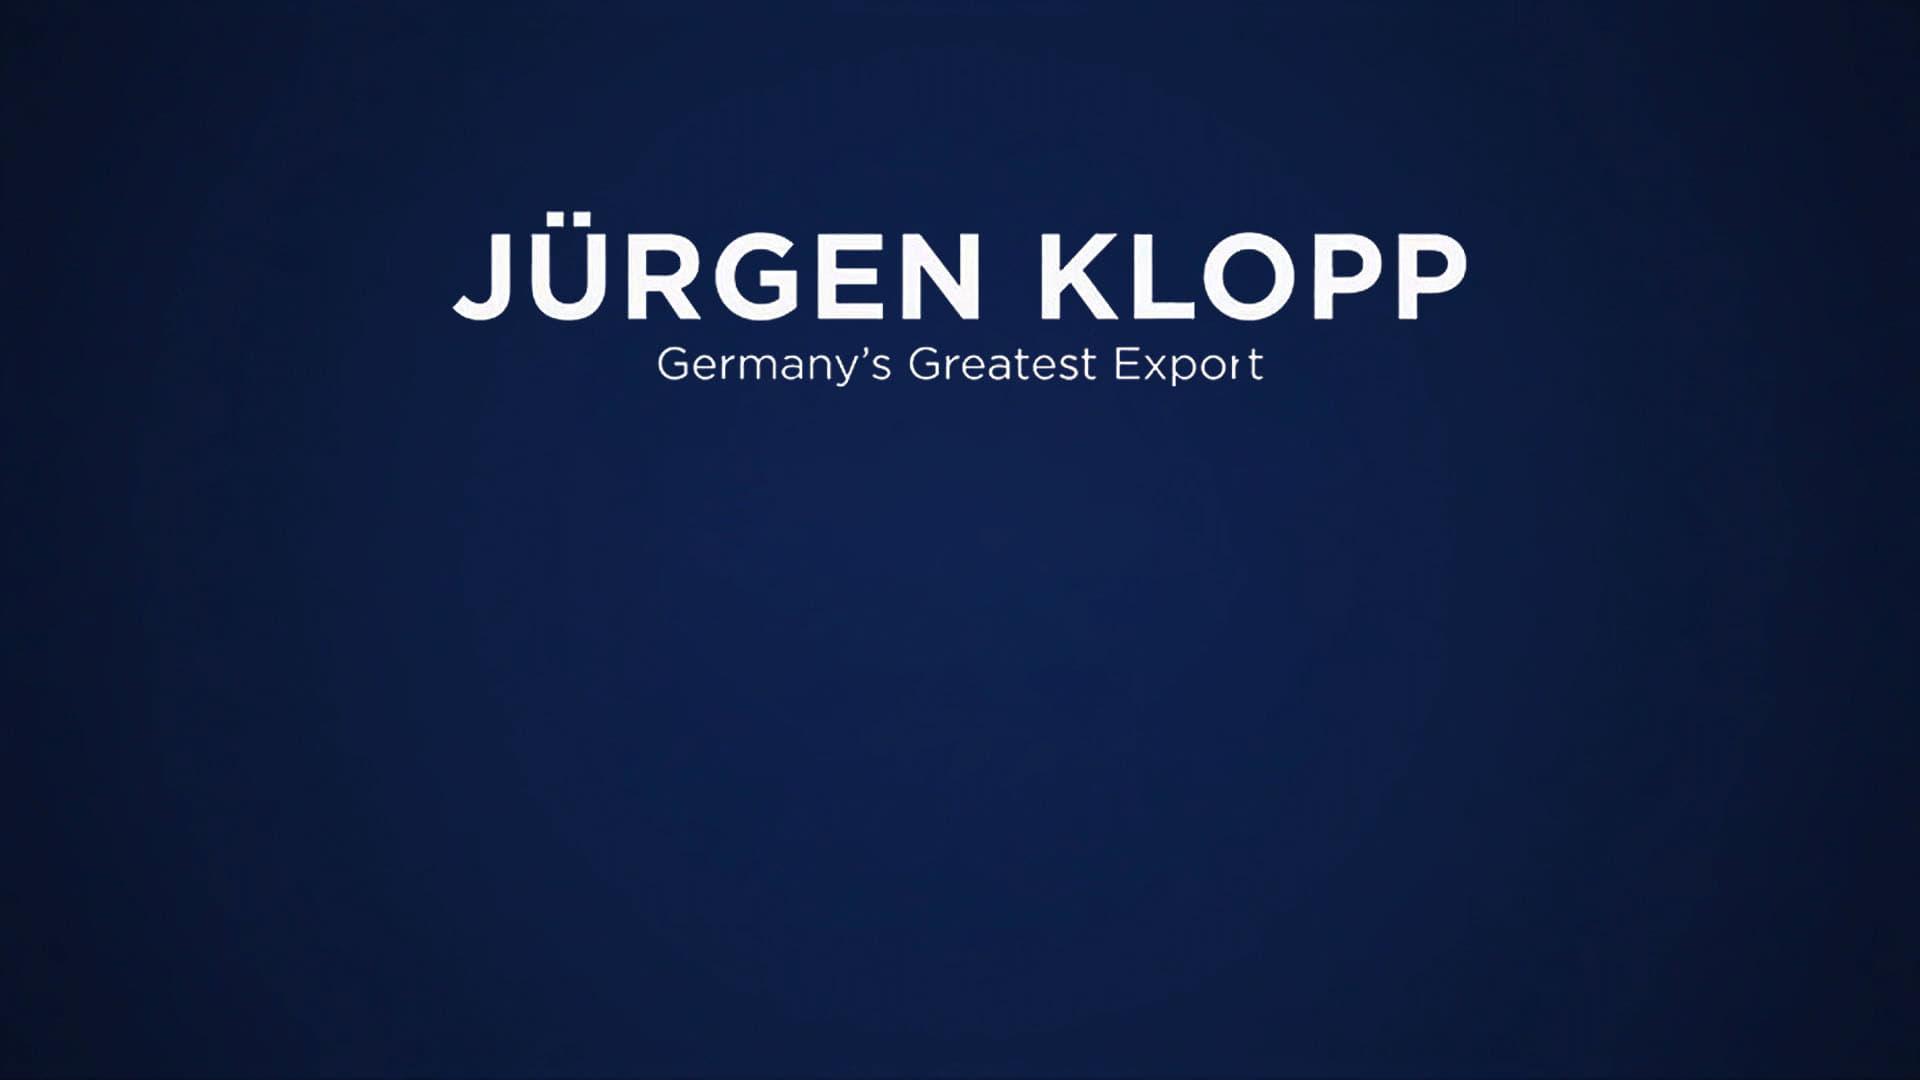 Jürgen Klopp: Germany's Greatest Export